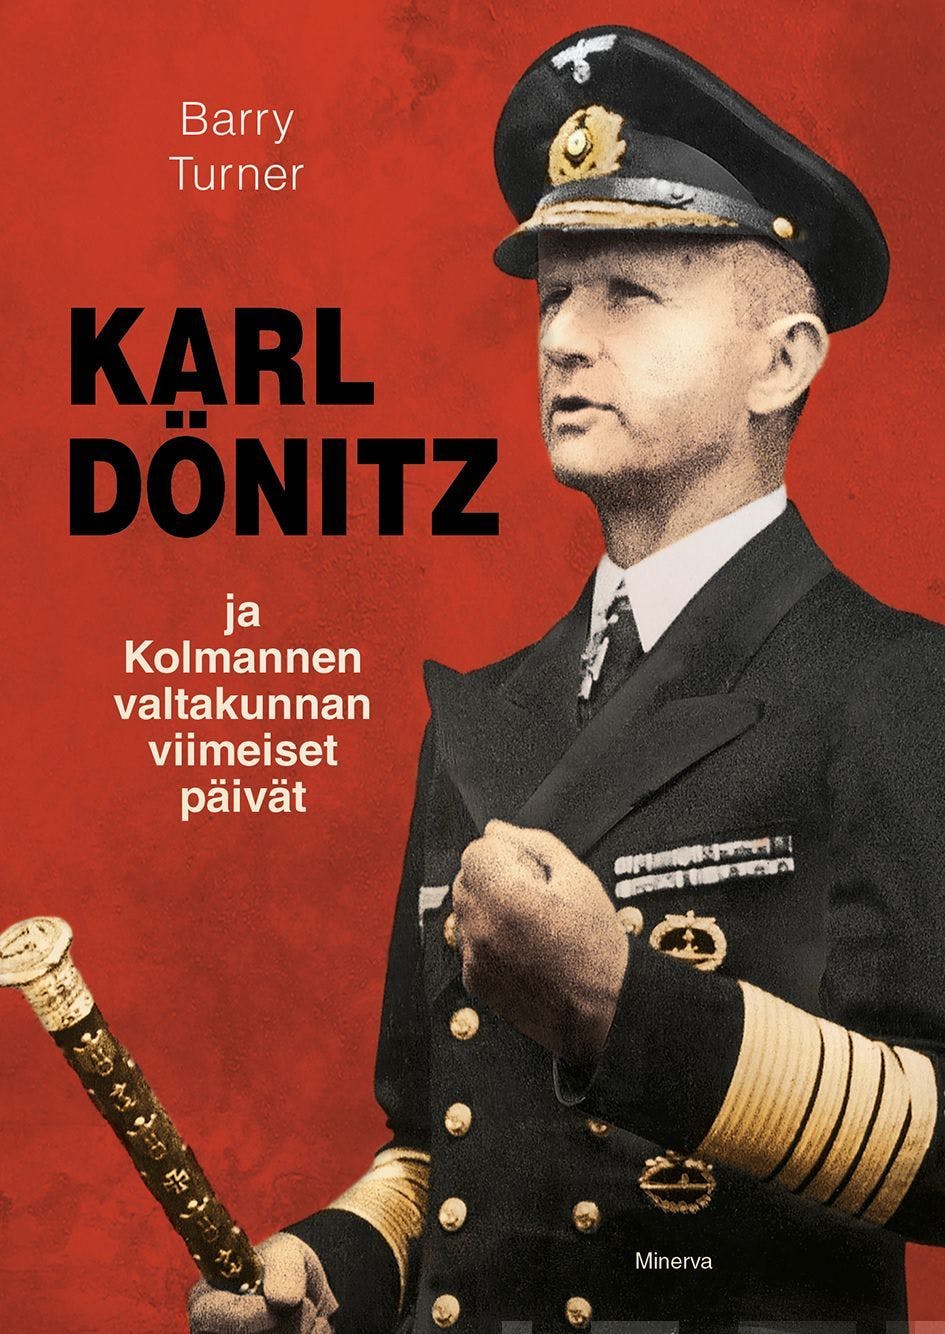 Karl Dönitz ja kolmannen valtakunnan viimeiset päivät - Barry Turner